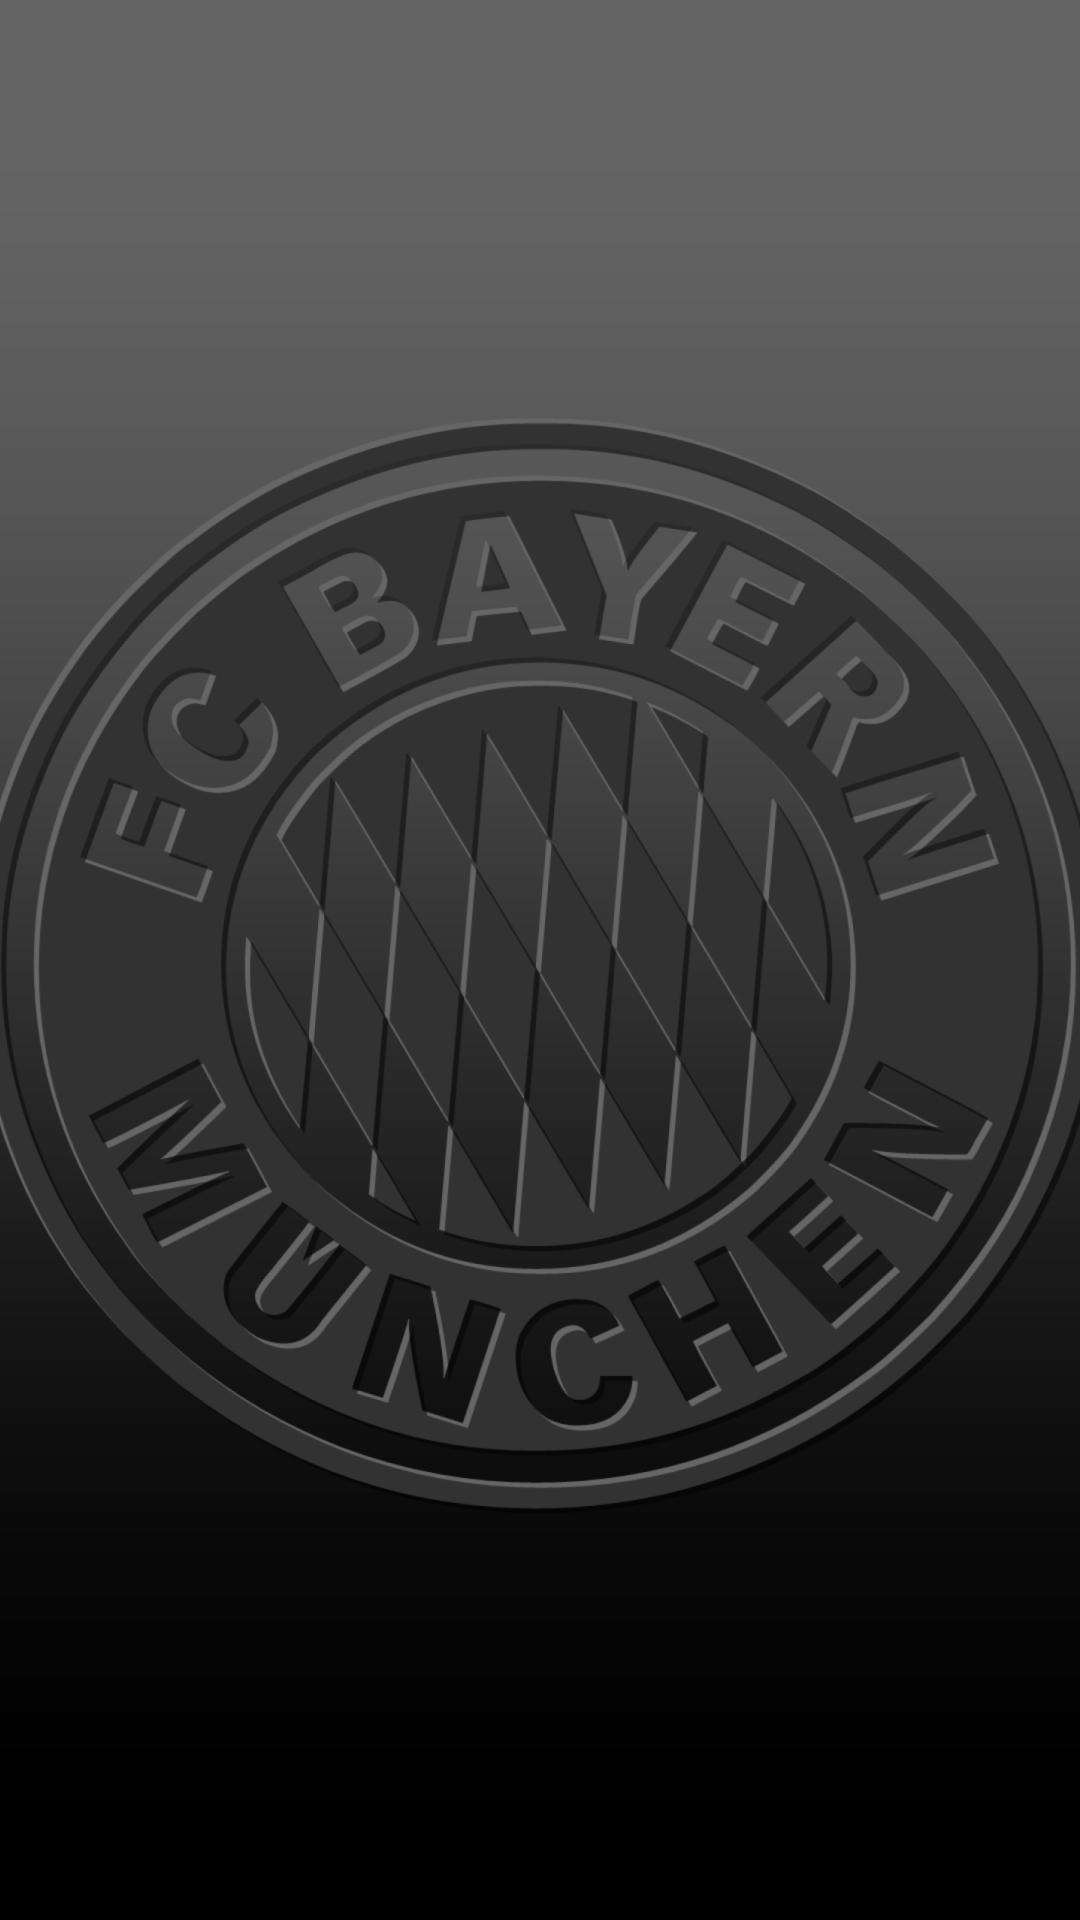 FC Bayern Munchen wallpaper 1080x1920